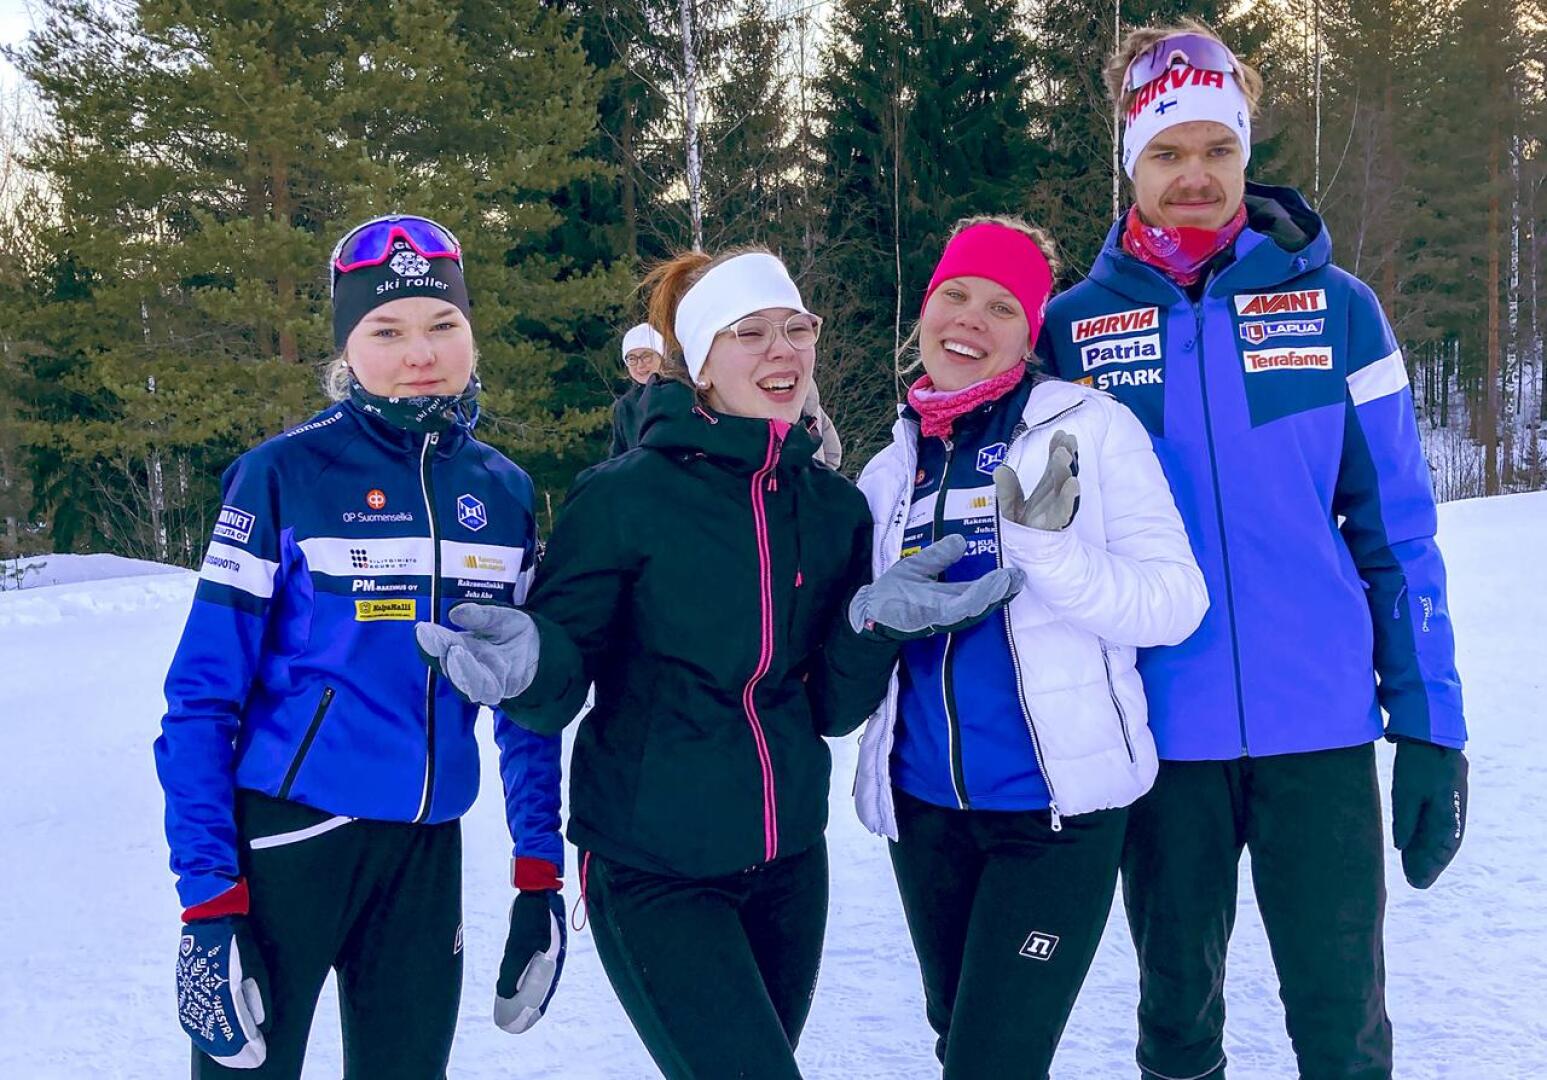 HaU-hiihtäjät Anni Niku, Riina Taskila, Viivi Jylänki ja Kalle Loukkaanhuhta nuorten SM-hiihdoissa Keuruulla.